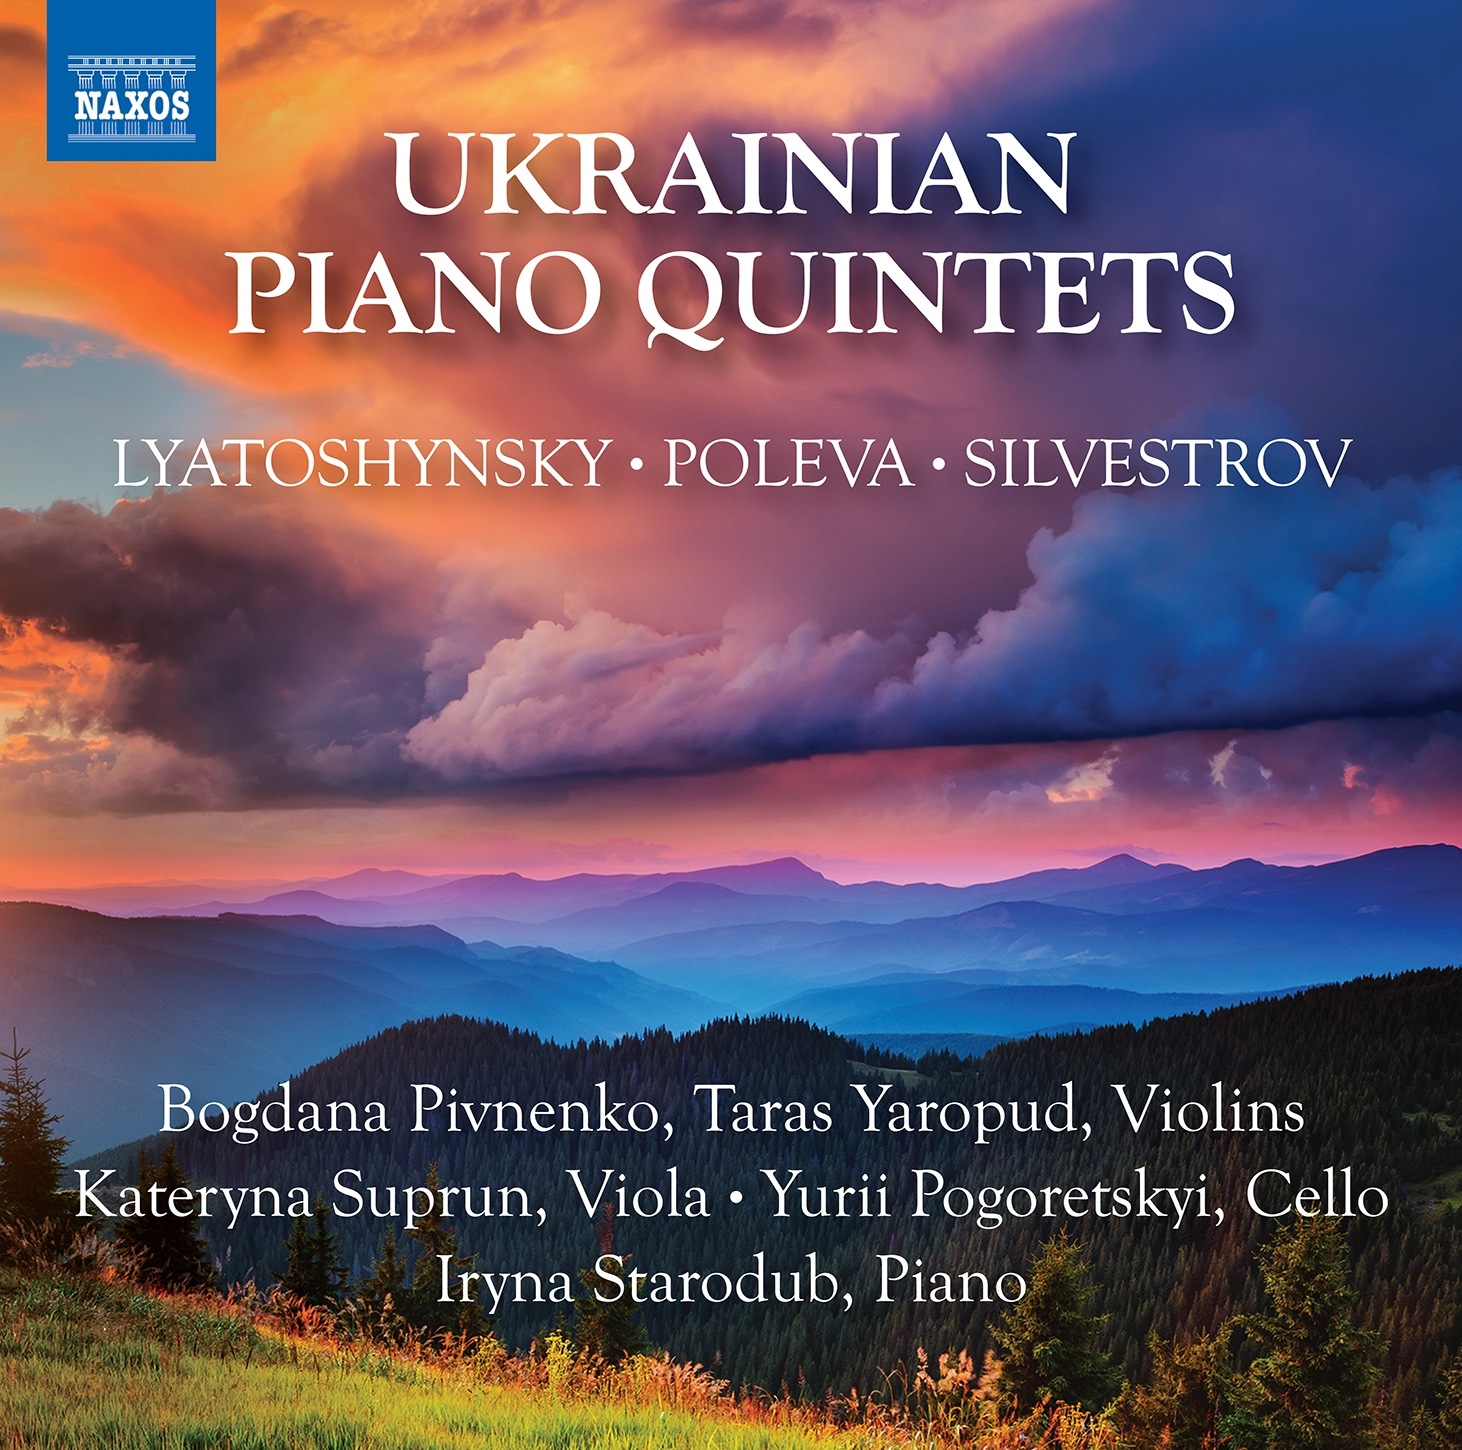 2022, ukraine, ukrainian piano quintets